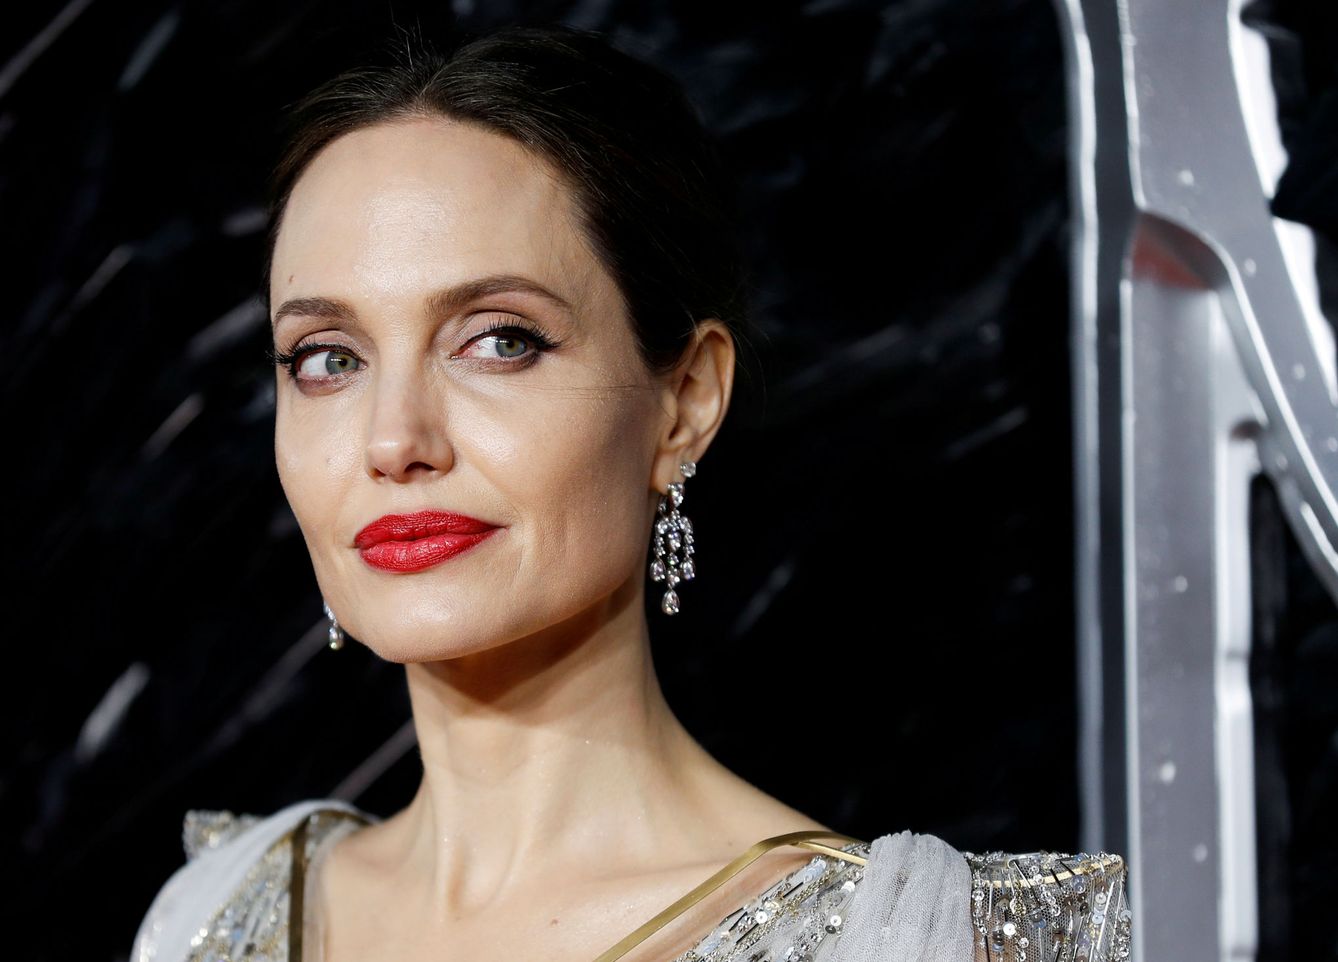 La mandíbula de Angelina Jolie, entre las más deseadas. (Reuters)